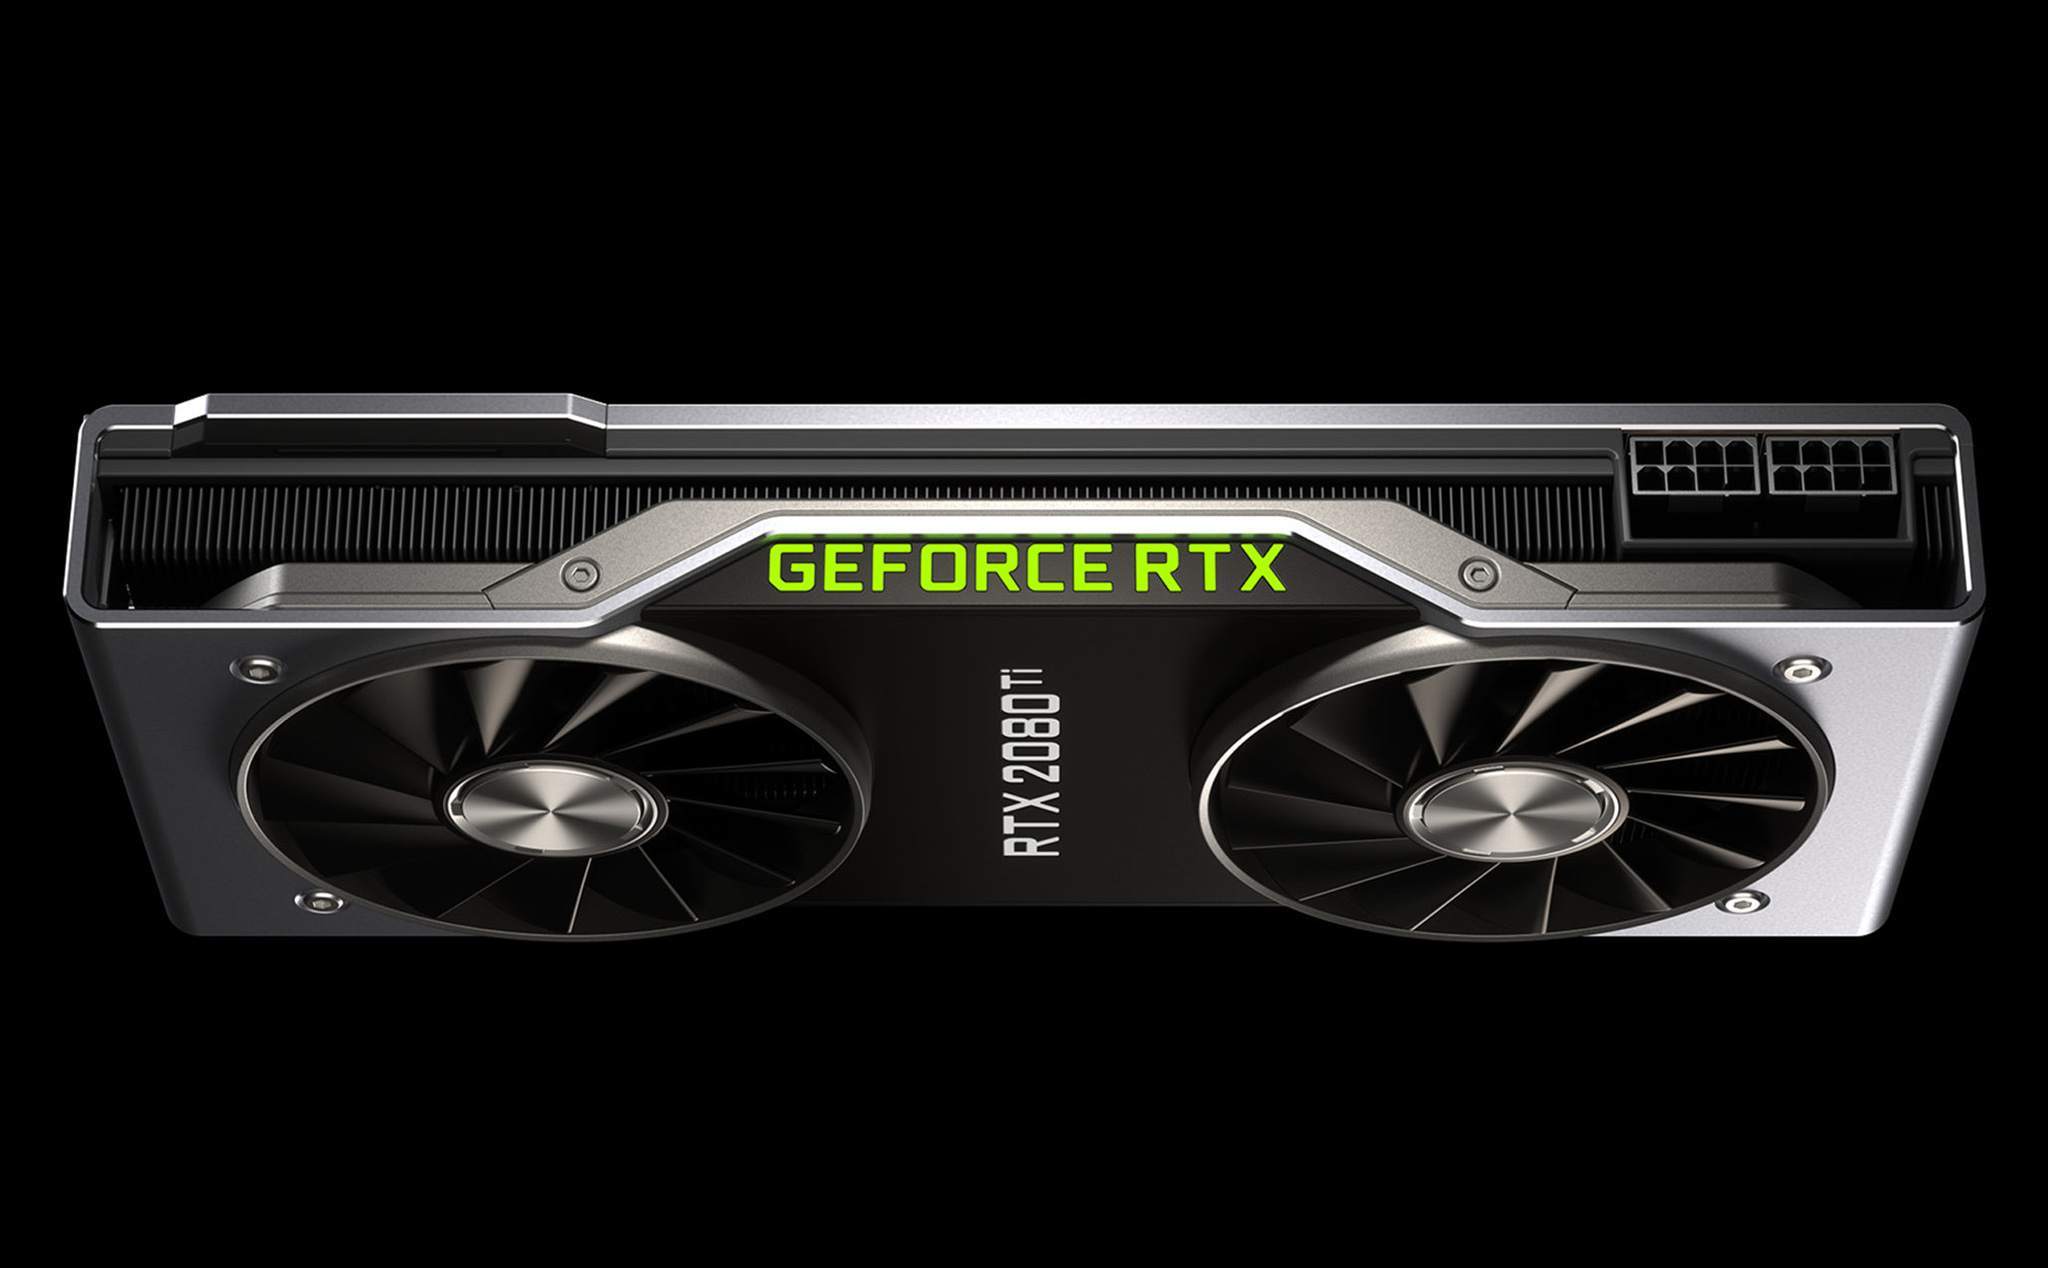 Nvidia chính thức giới thiệu RTX 20 series: Mạnh hơn cả Titan V, giá 499 USD cho bản rẻ nhất